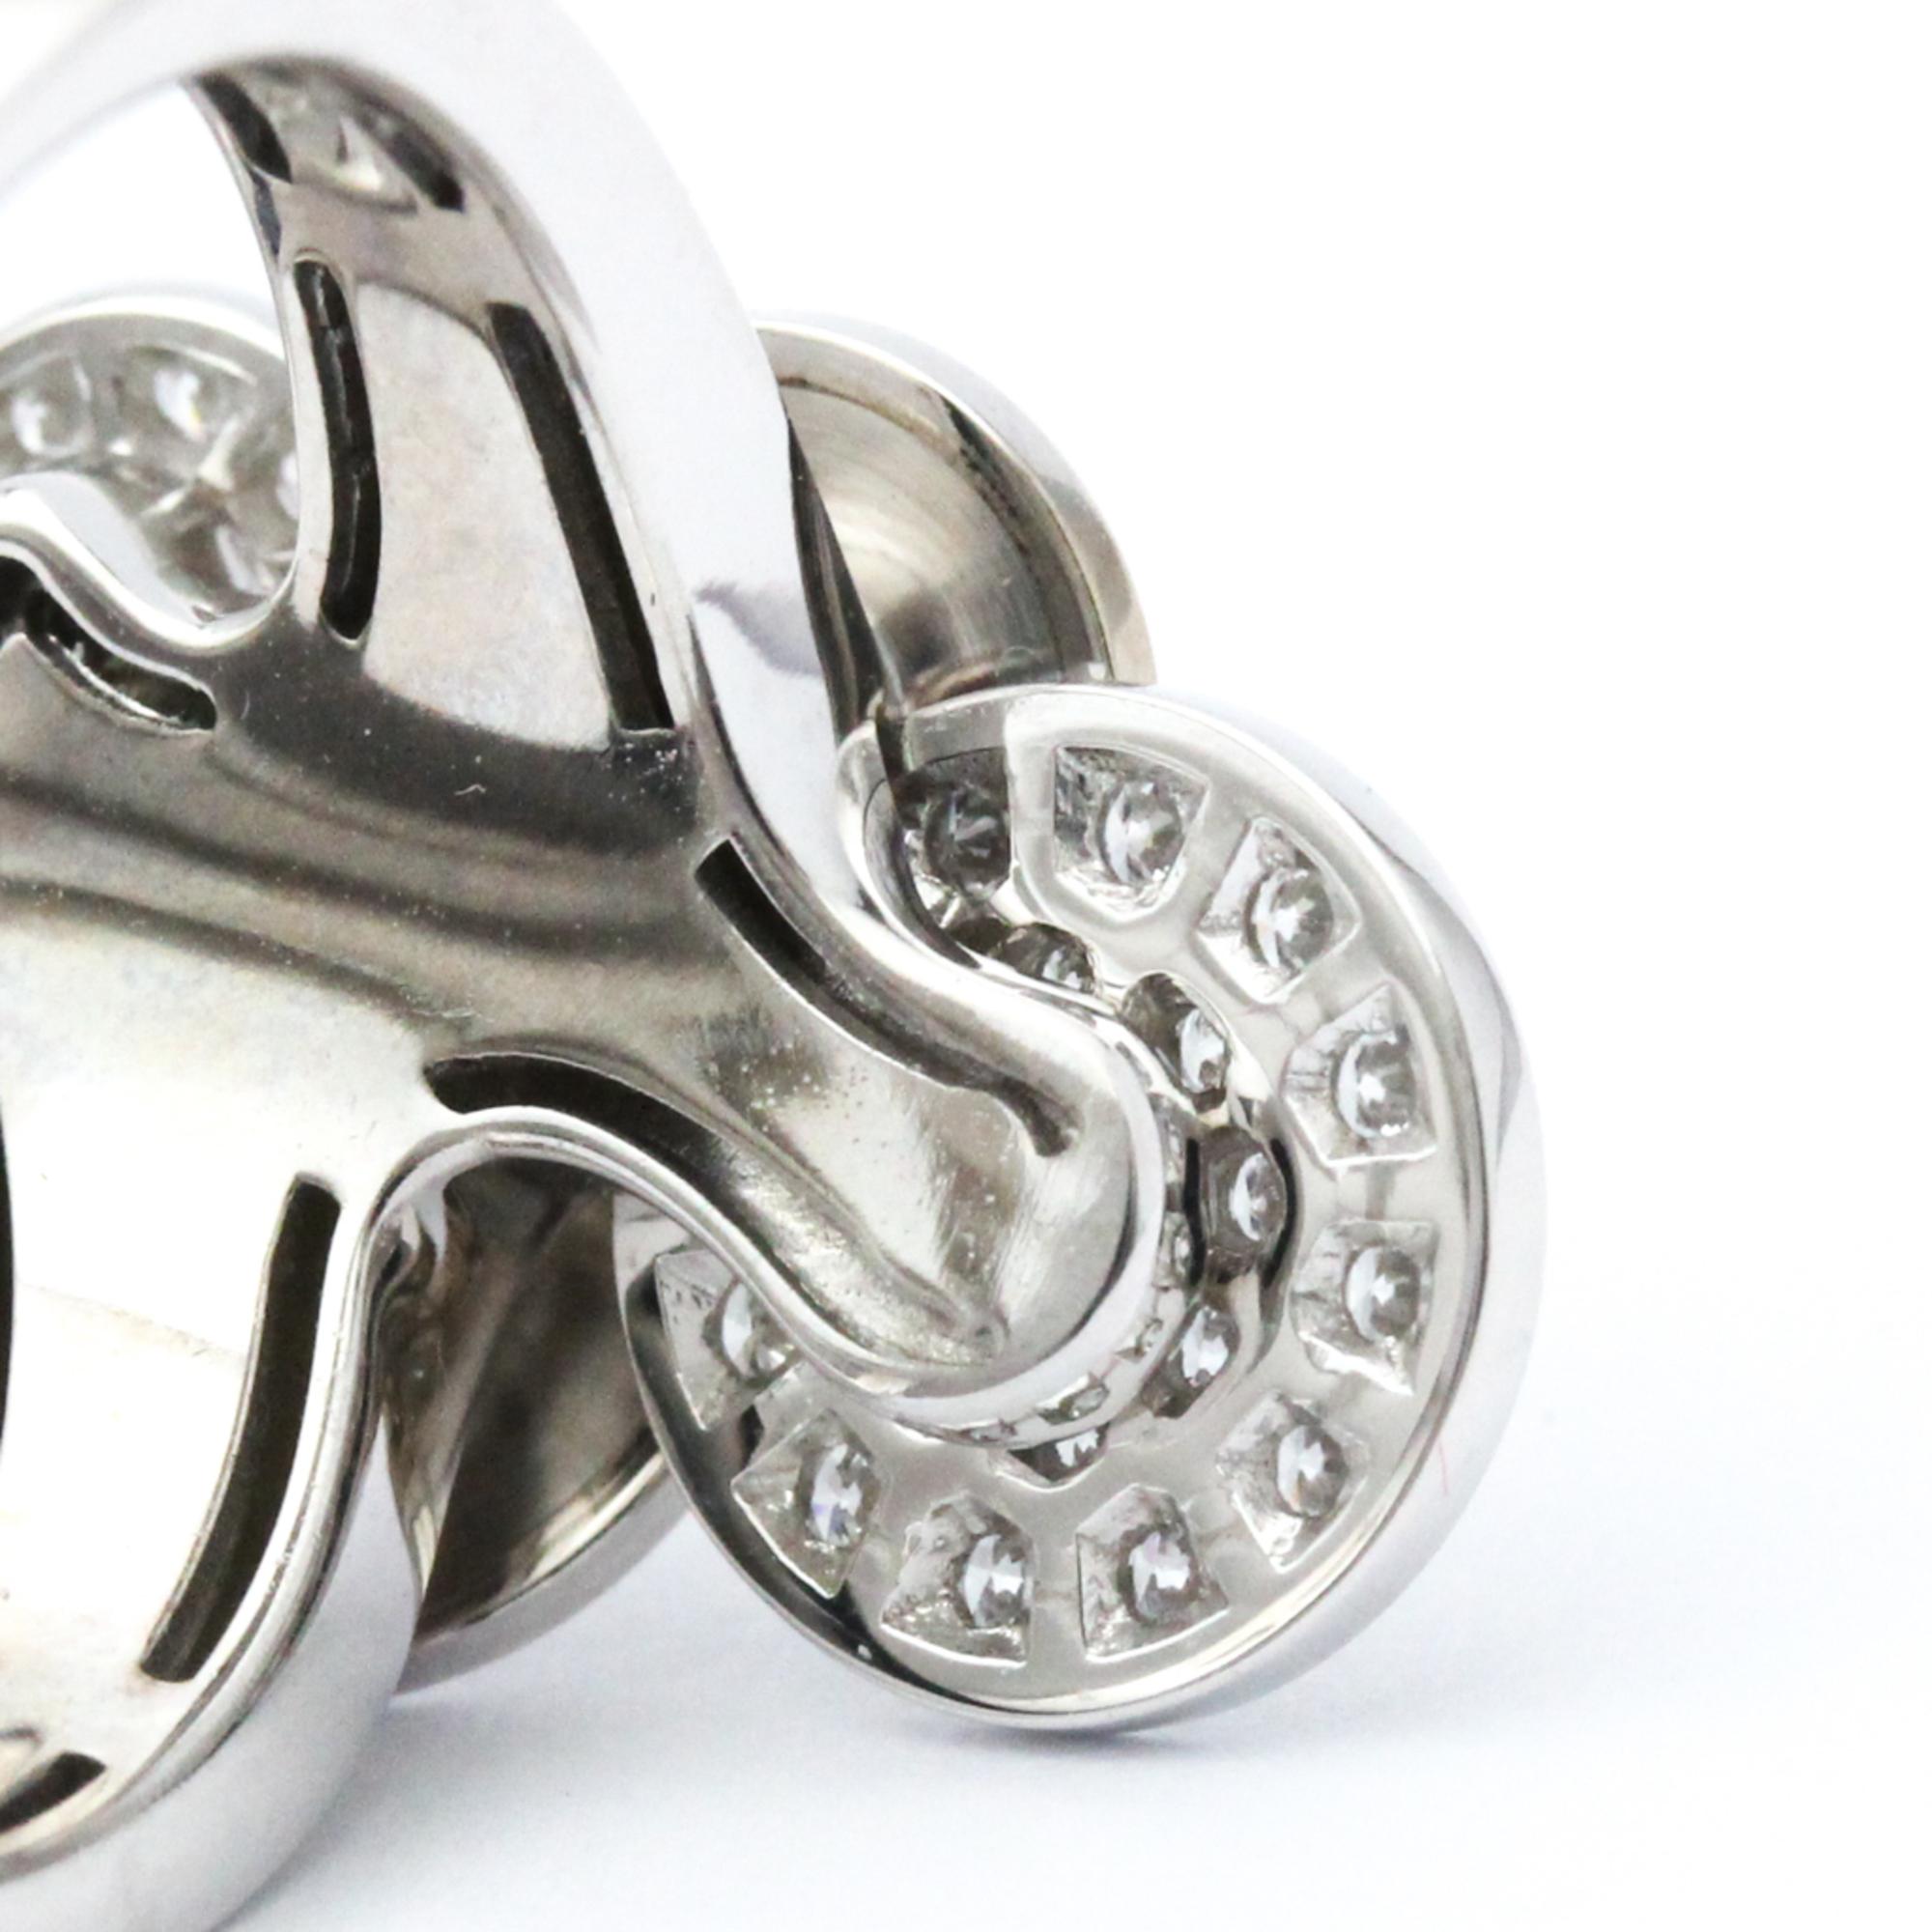 Bvlgari Cicladi Diamond Ring White Gold (18K) Fashion Diamond Band Ring Silver